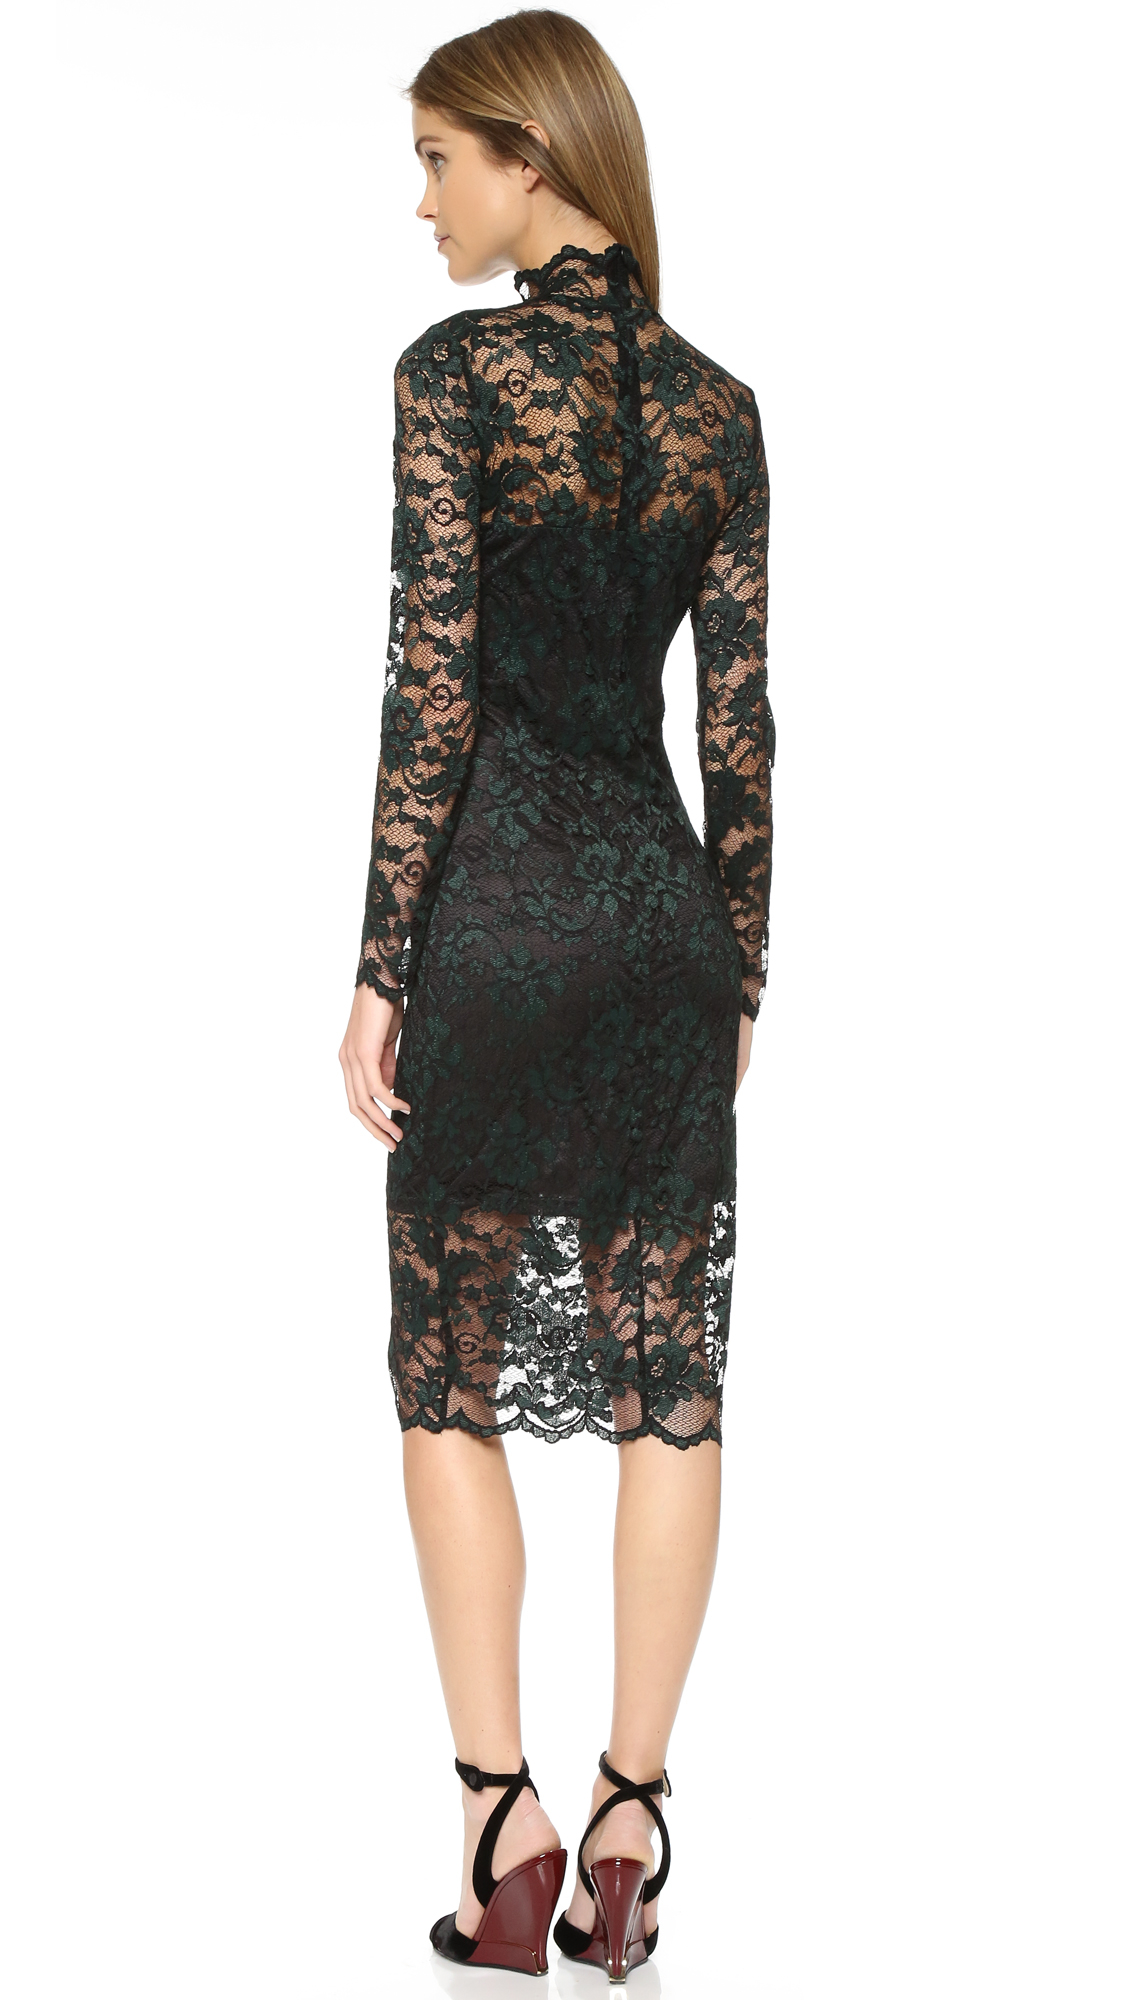 ganni black lace dress off 70% - medpharmres.com